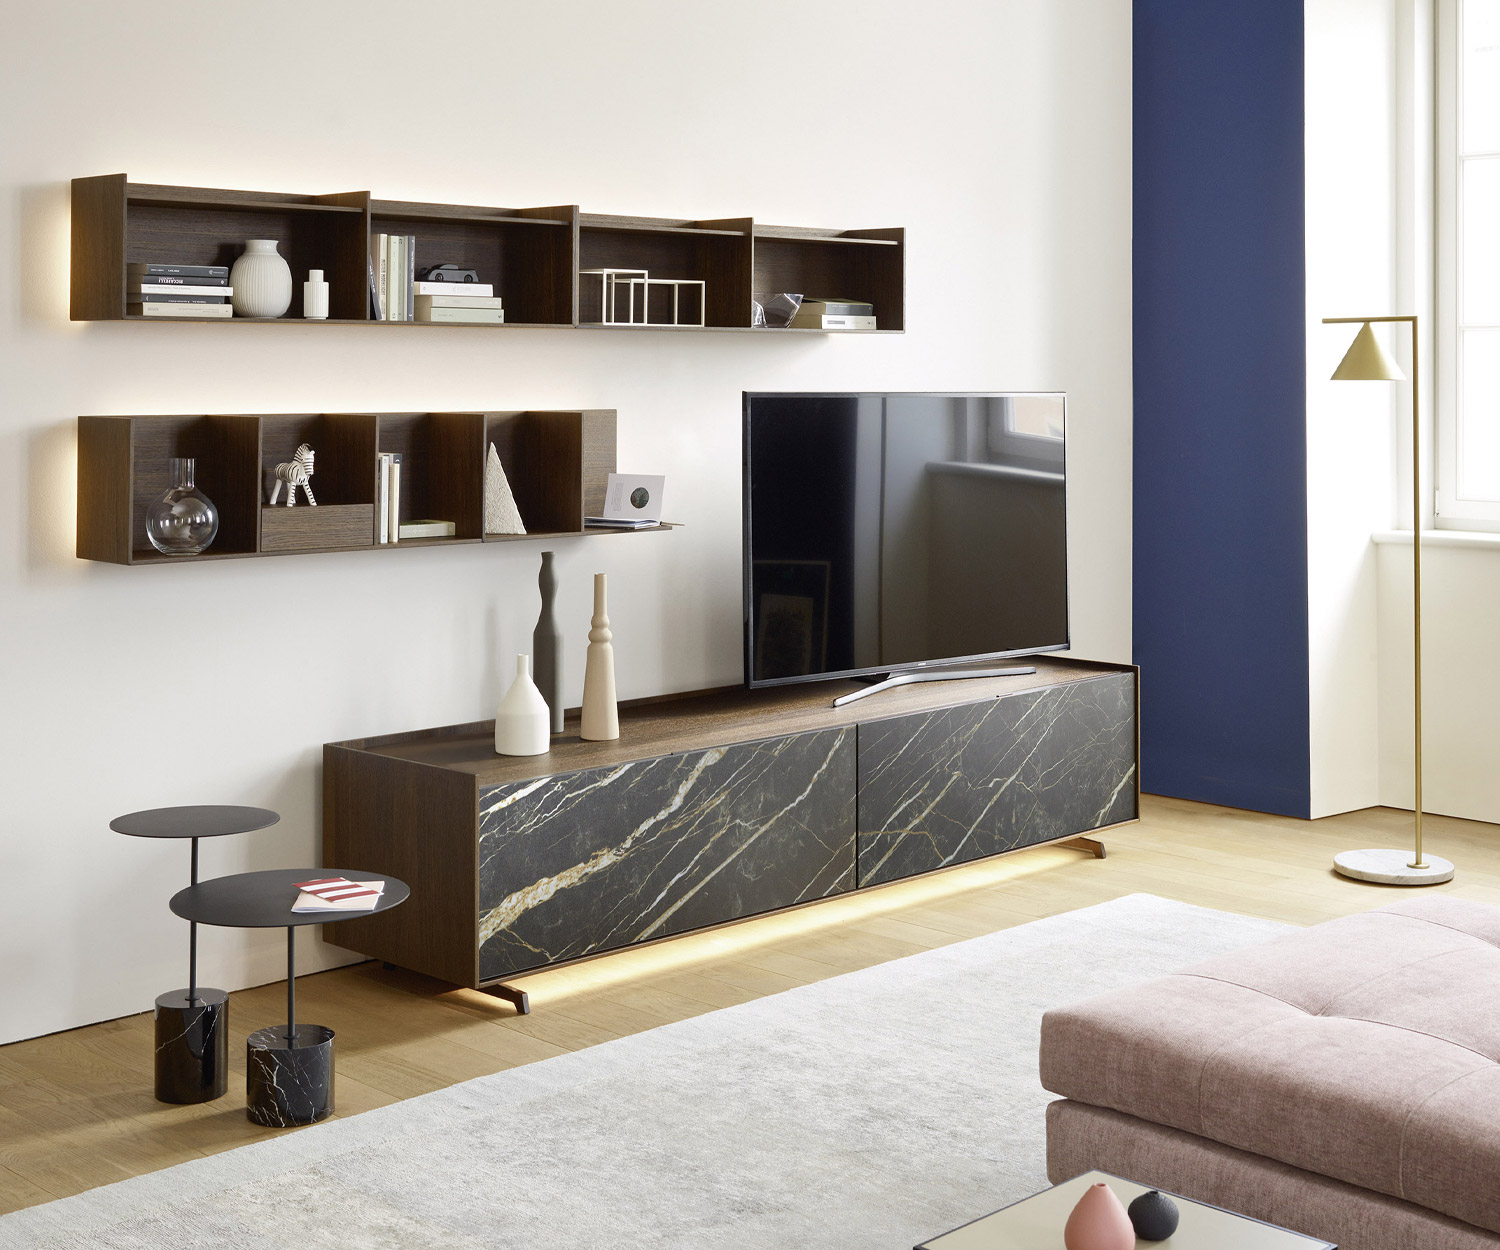 Holz Regal von Livitalia mit Ablage aus Holz über Design Lowboard mit stehendem TV Gerät